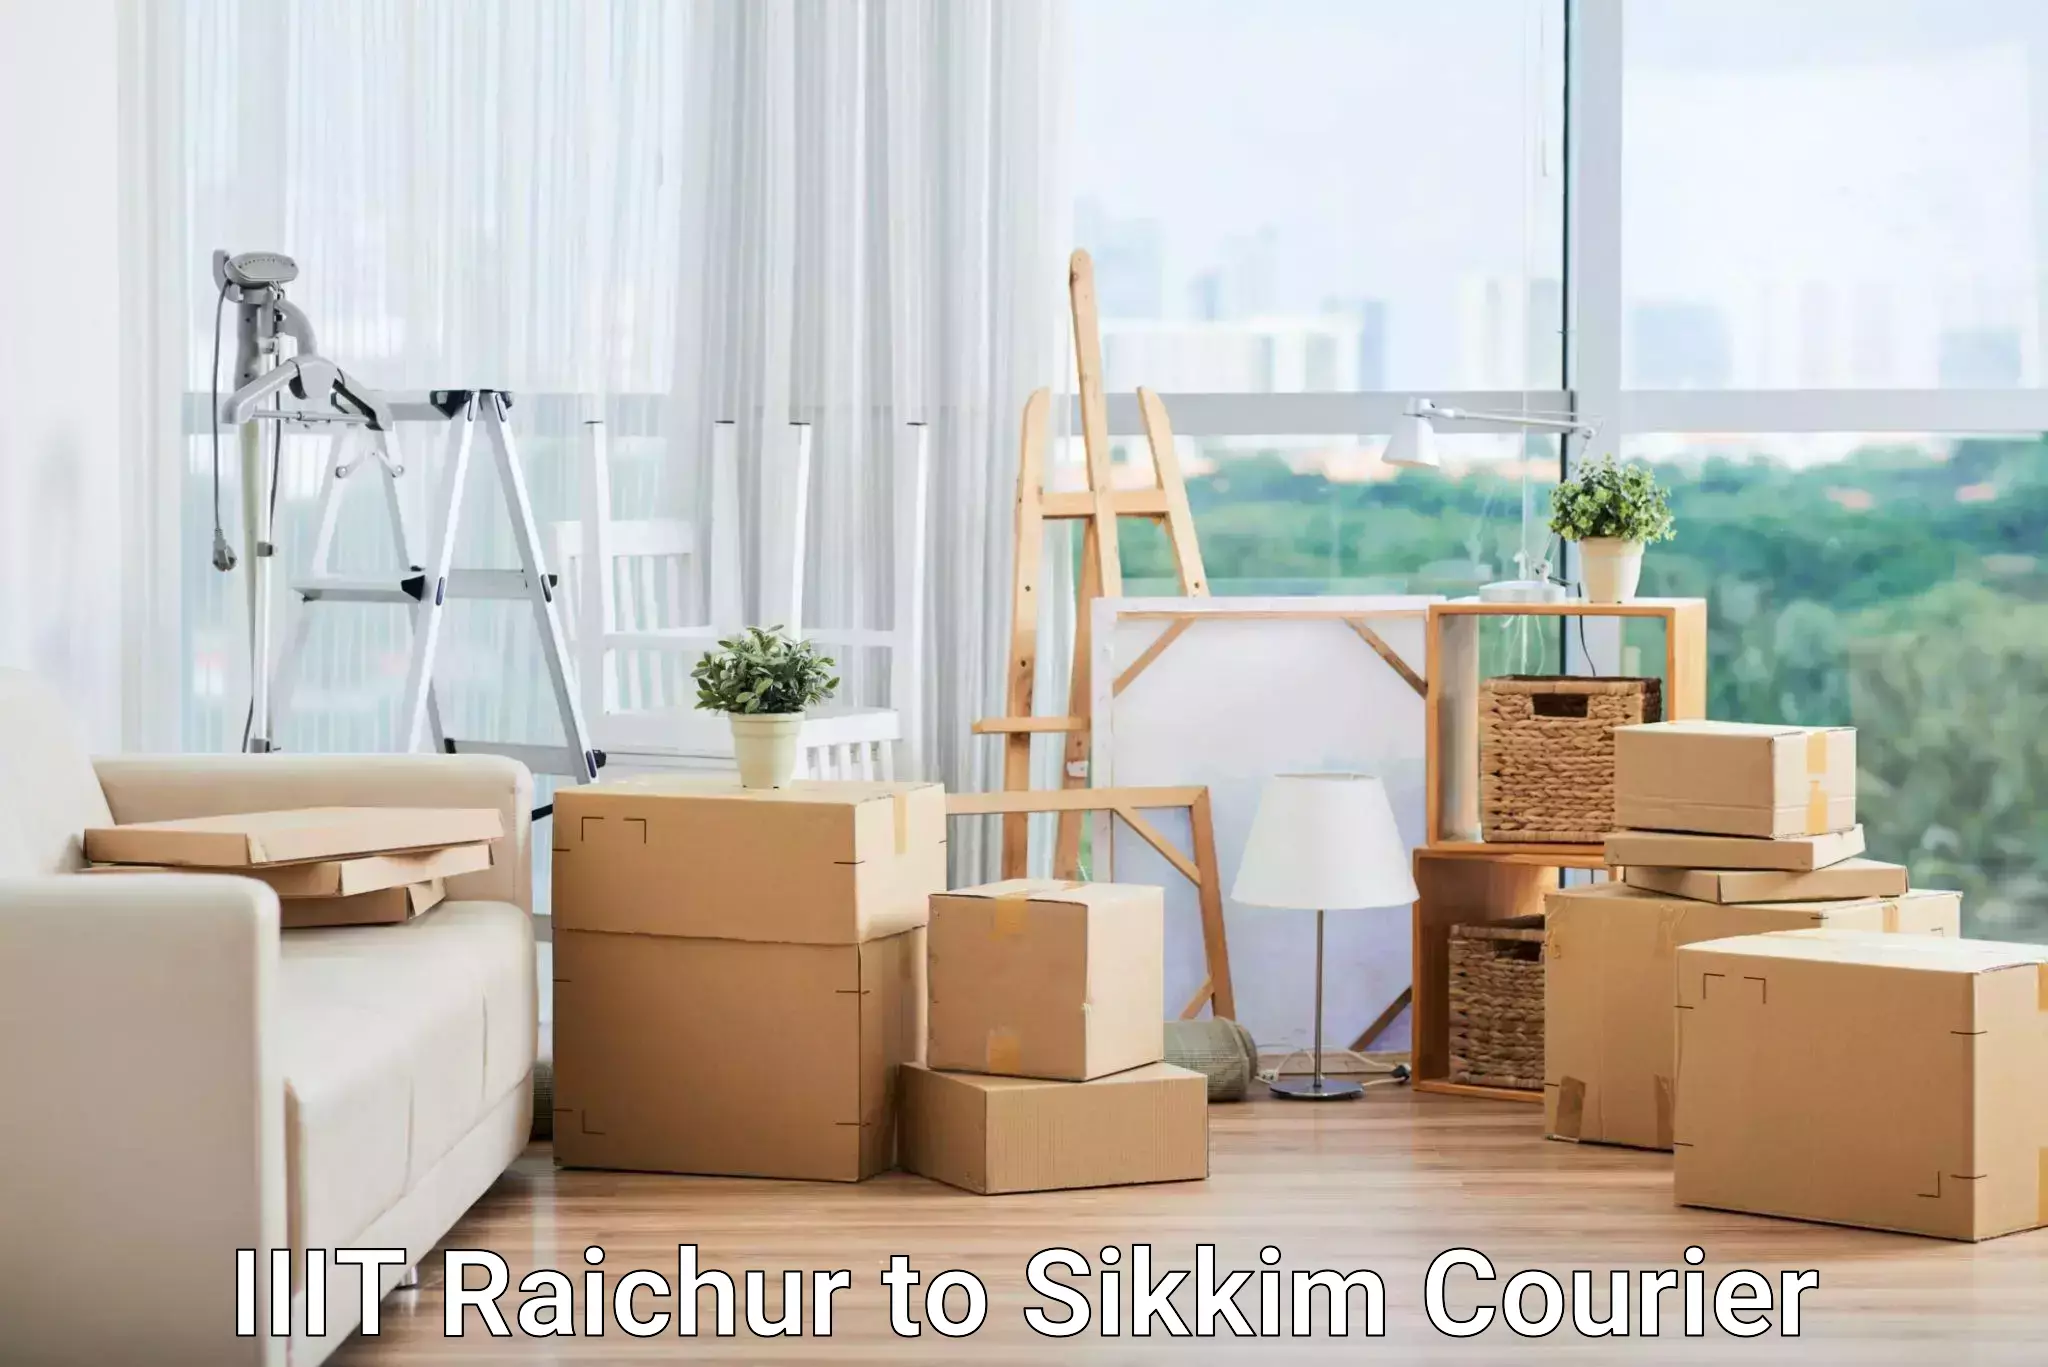 Affordable shipping rates in IIIT Raichur to Ravangla